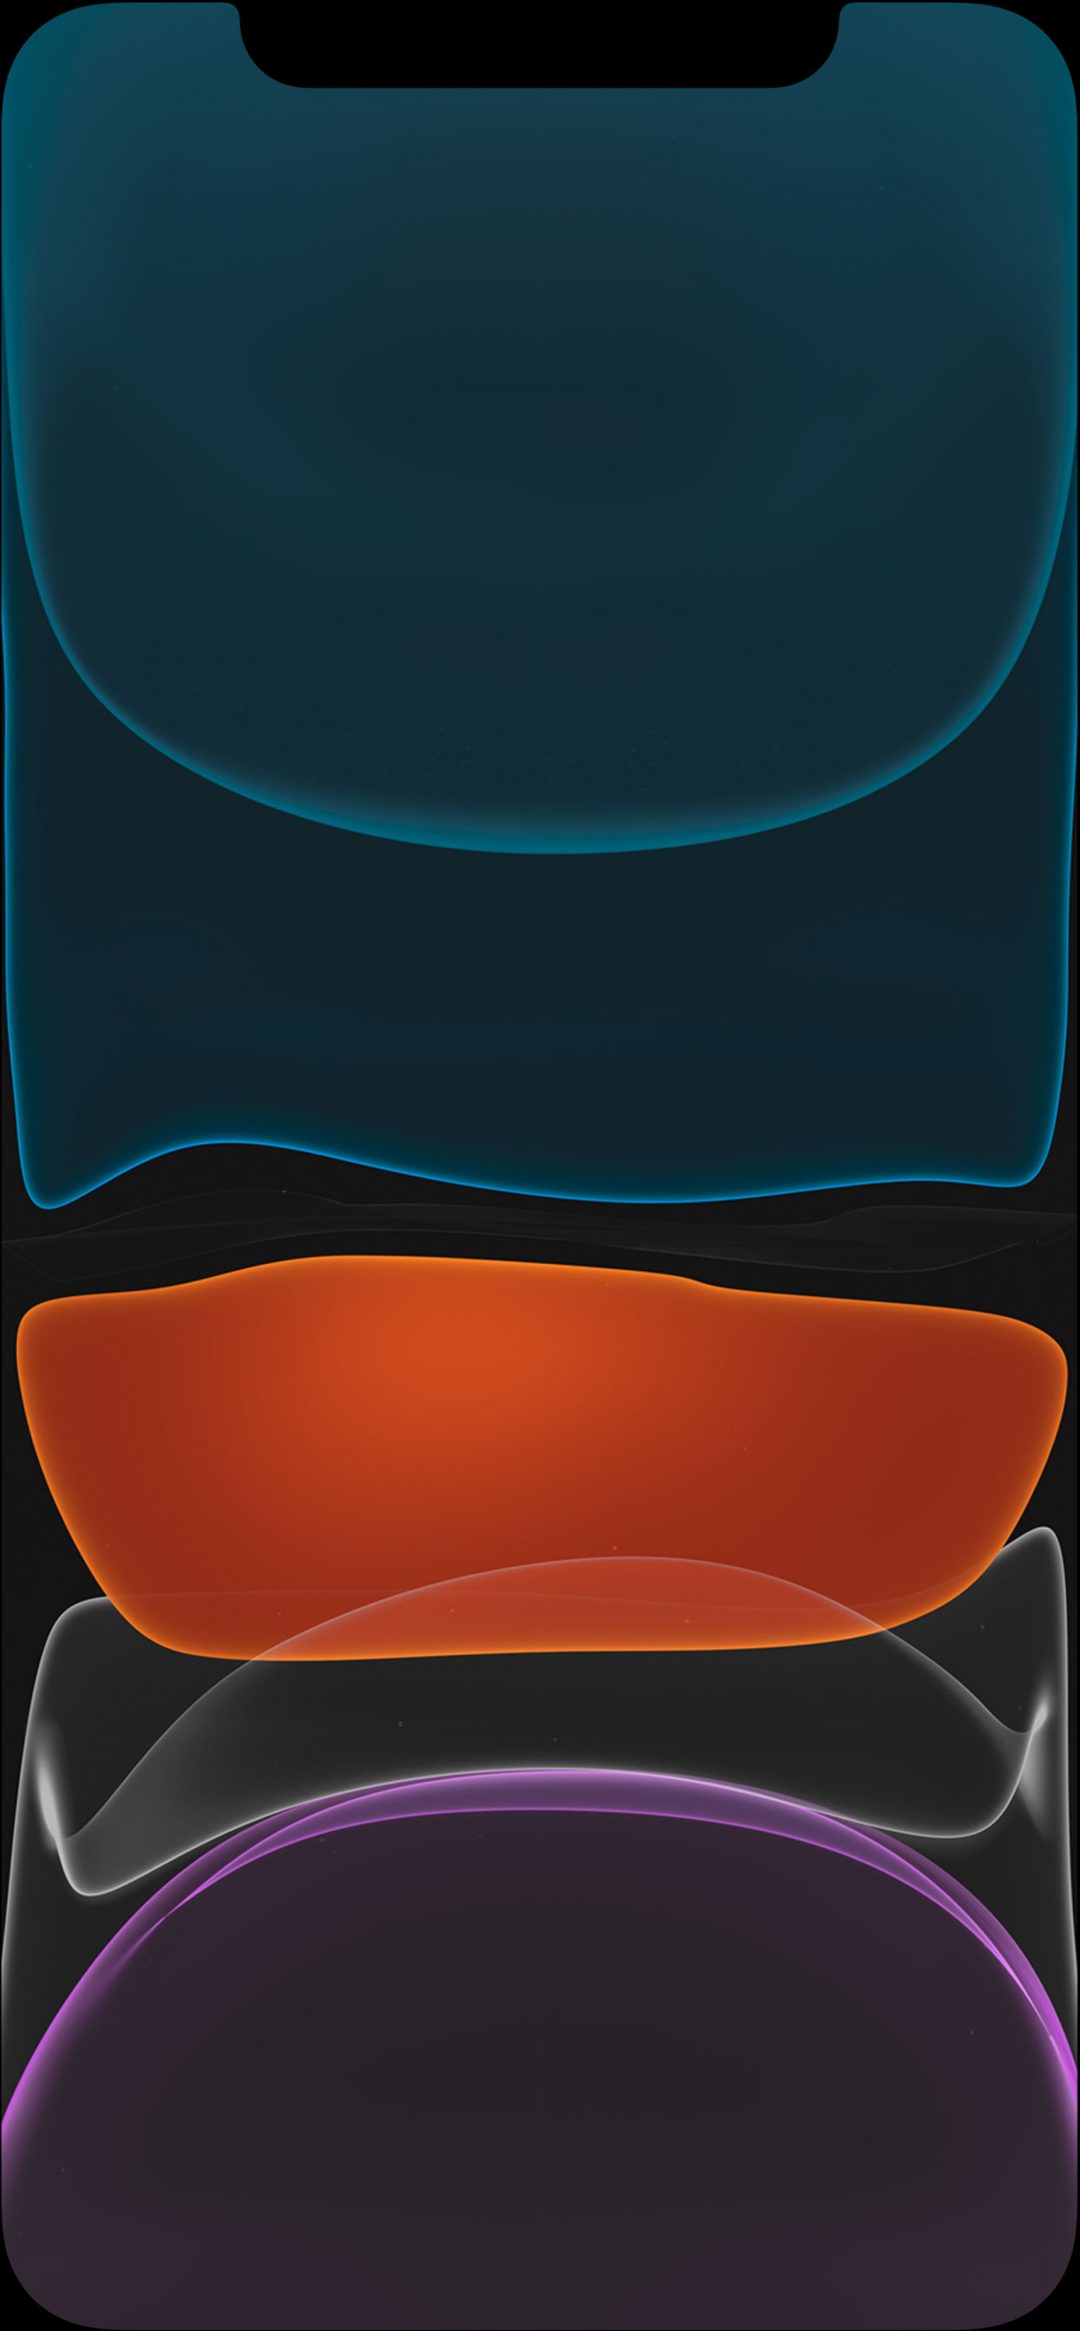 iphone wallpaper,blau,orange,elektrisches blau,design,muster